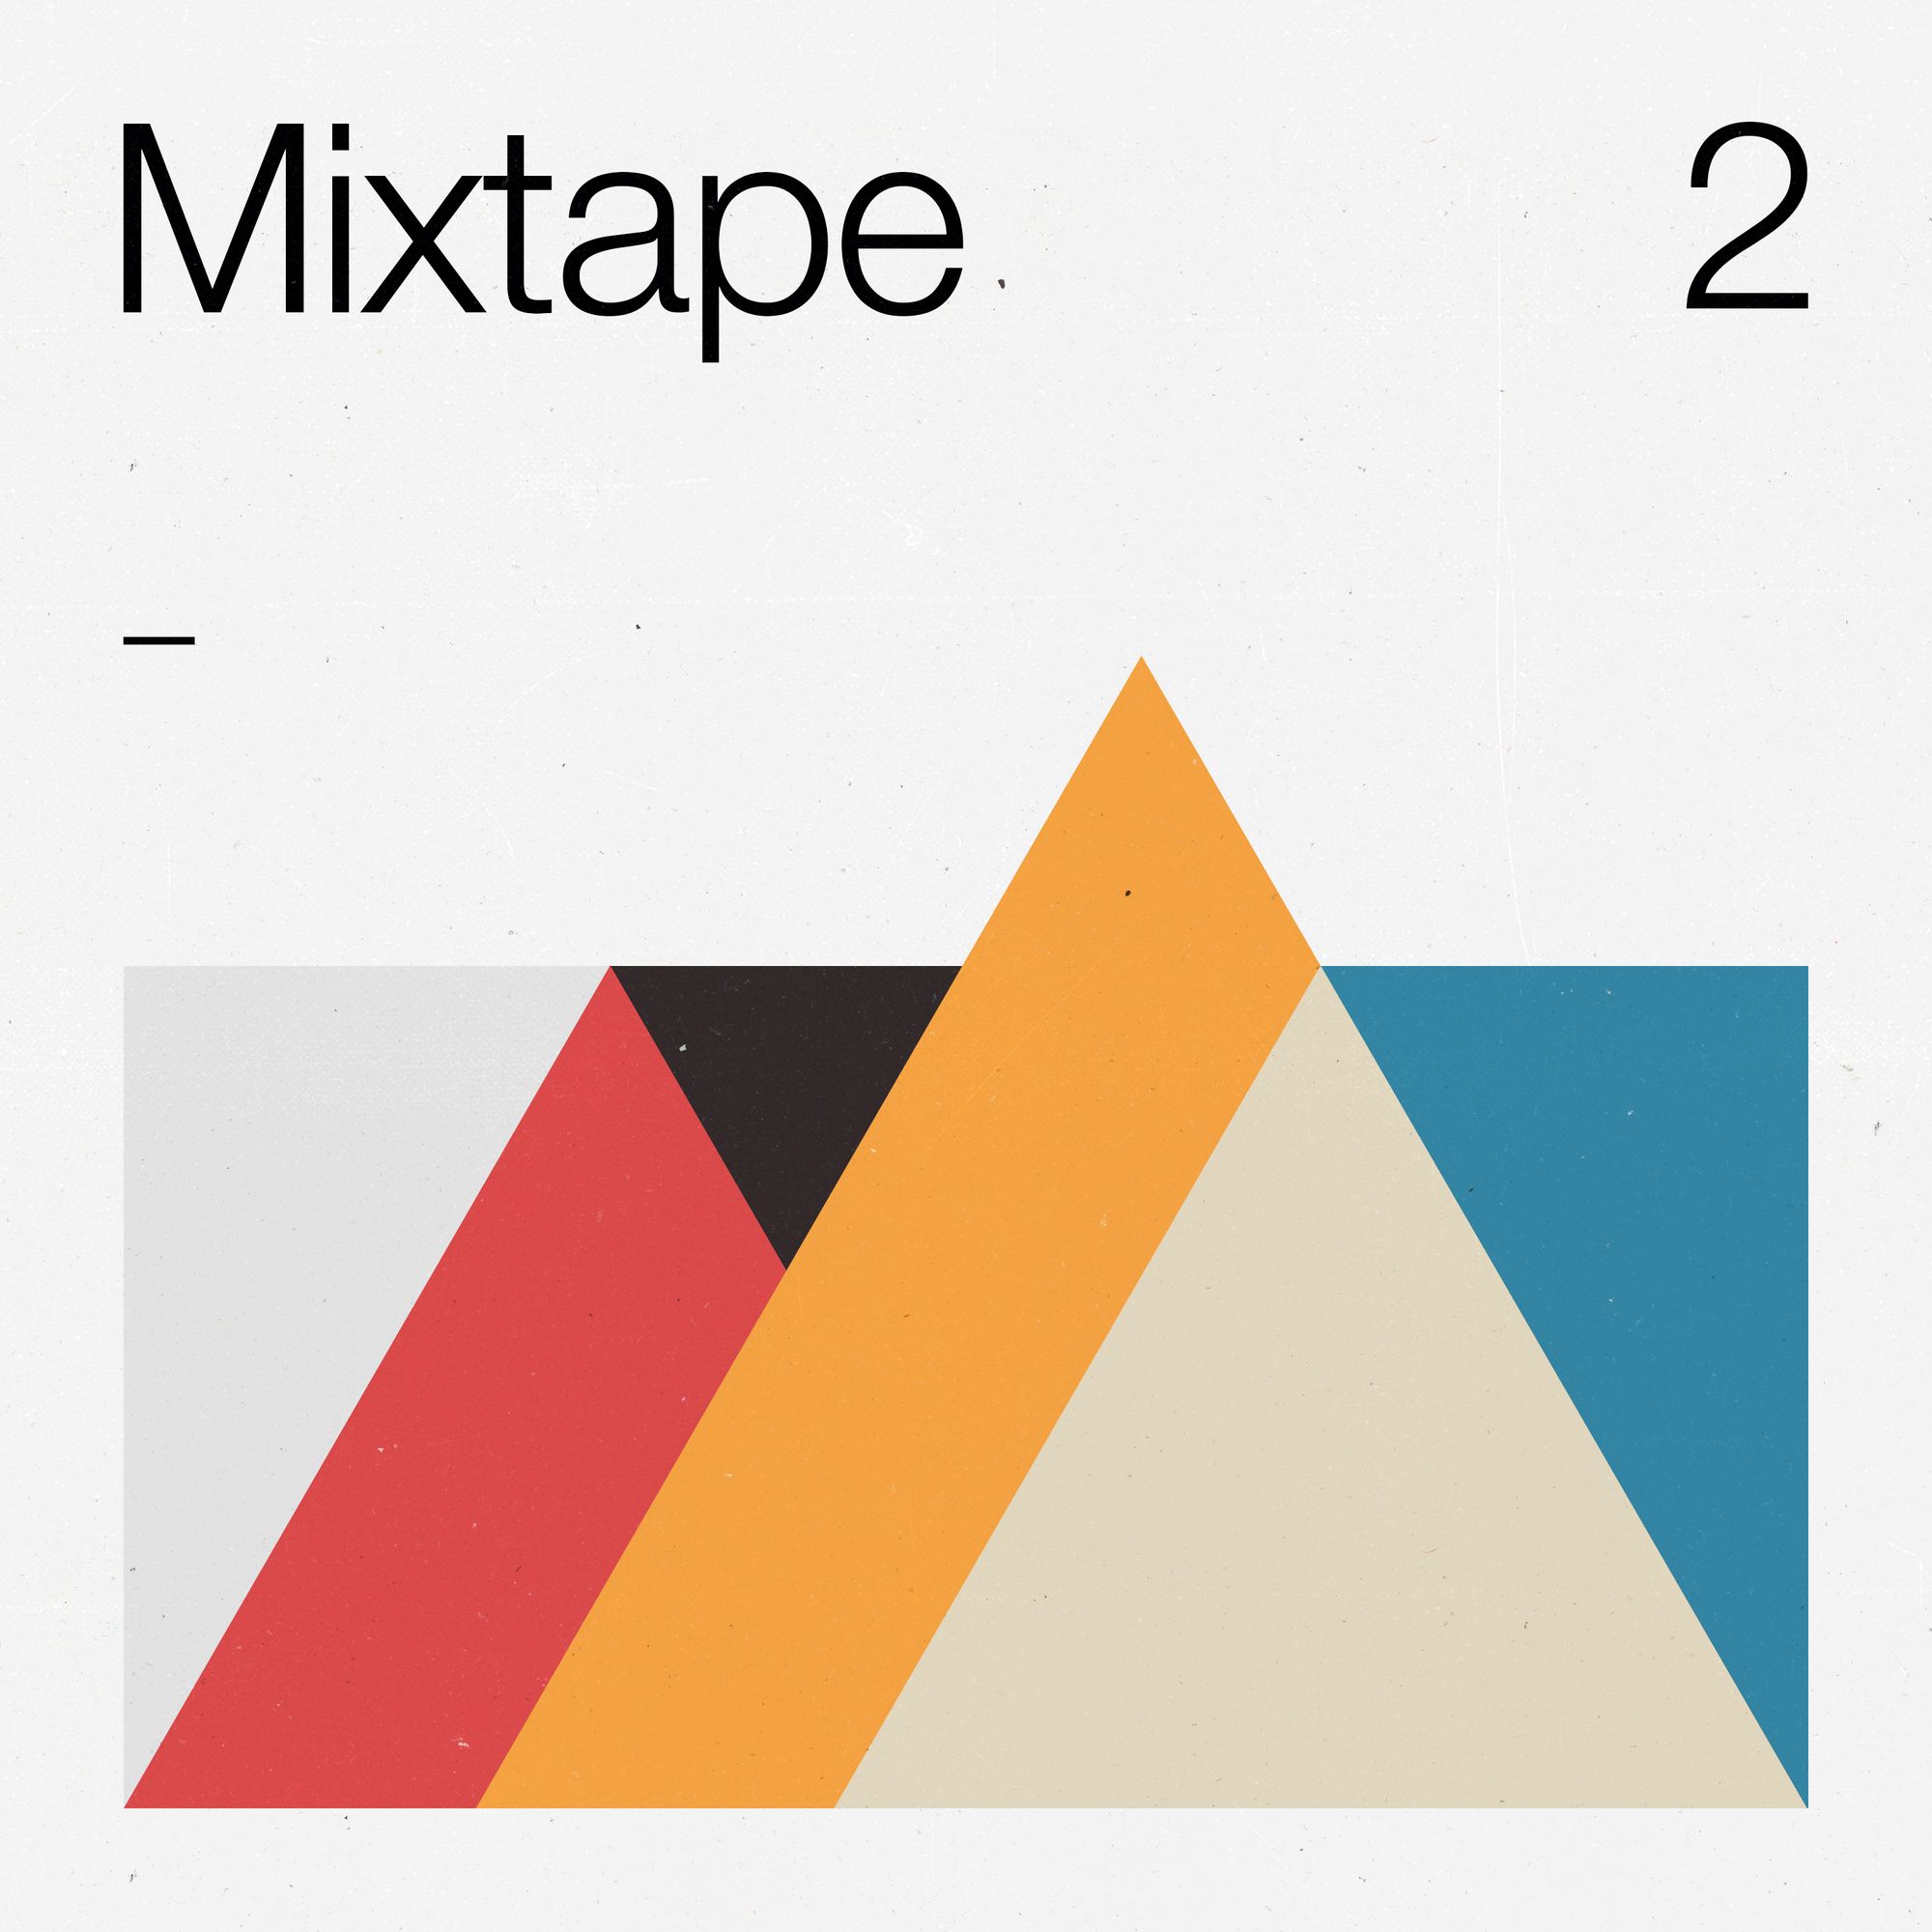 A1 Mixtape 2